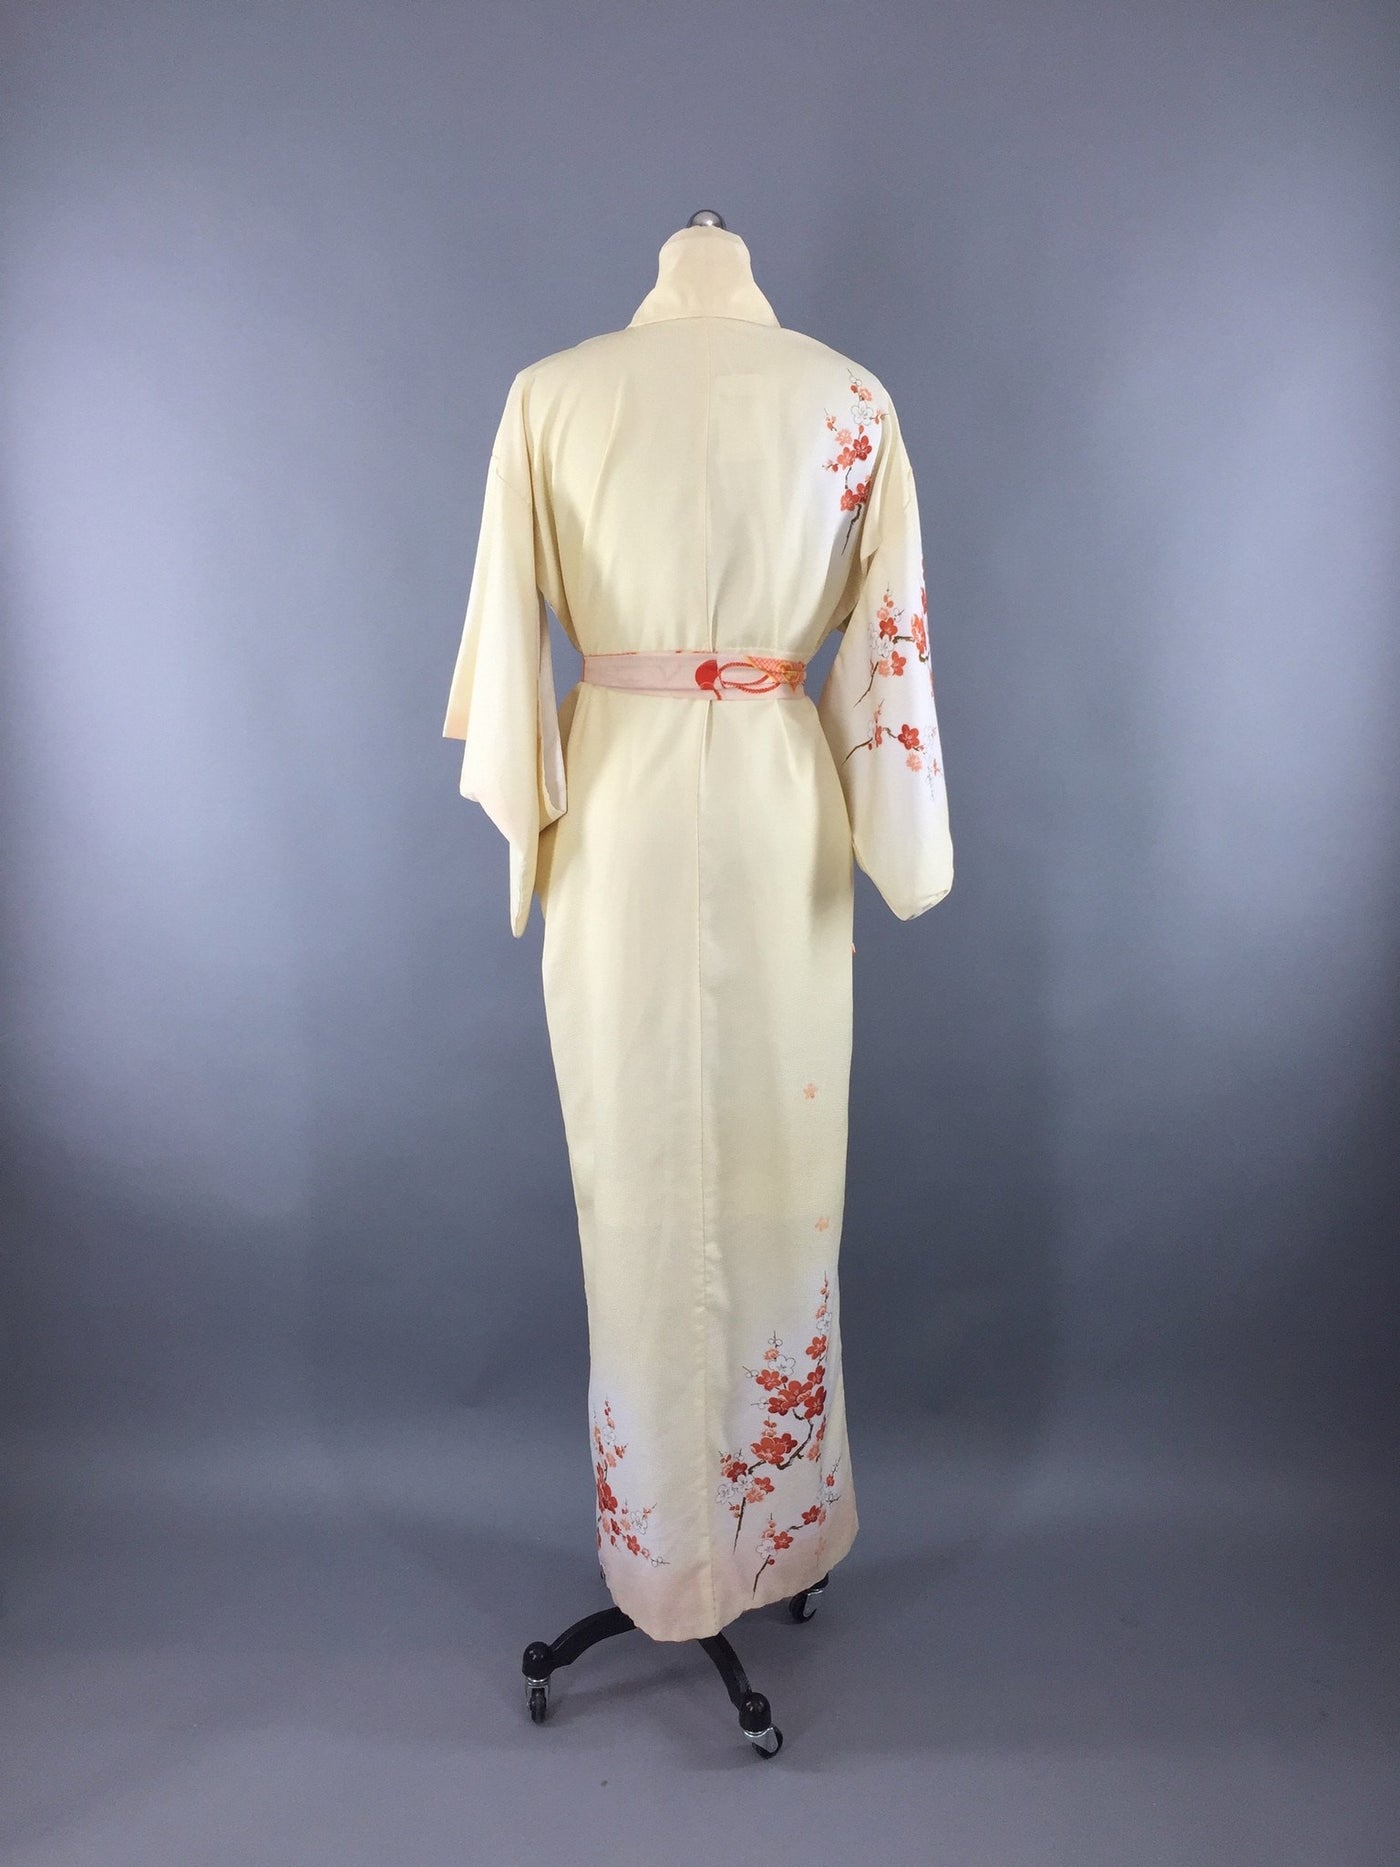 1970s Vintage Kimono Robe with Yellow and Orange Floral Print - ThisBlueBird